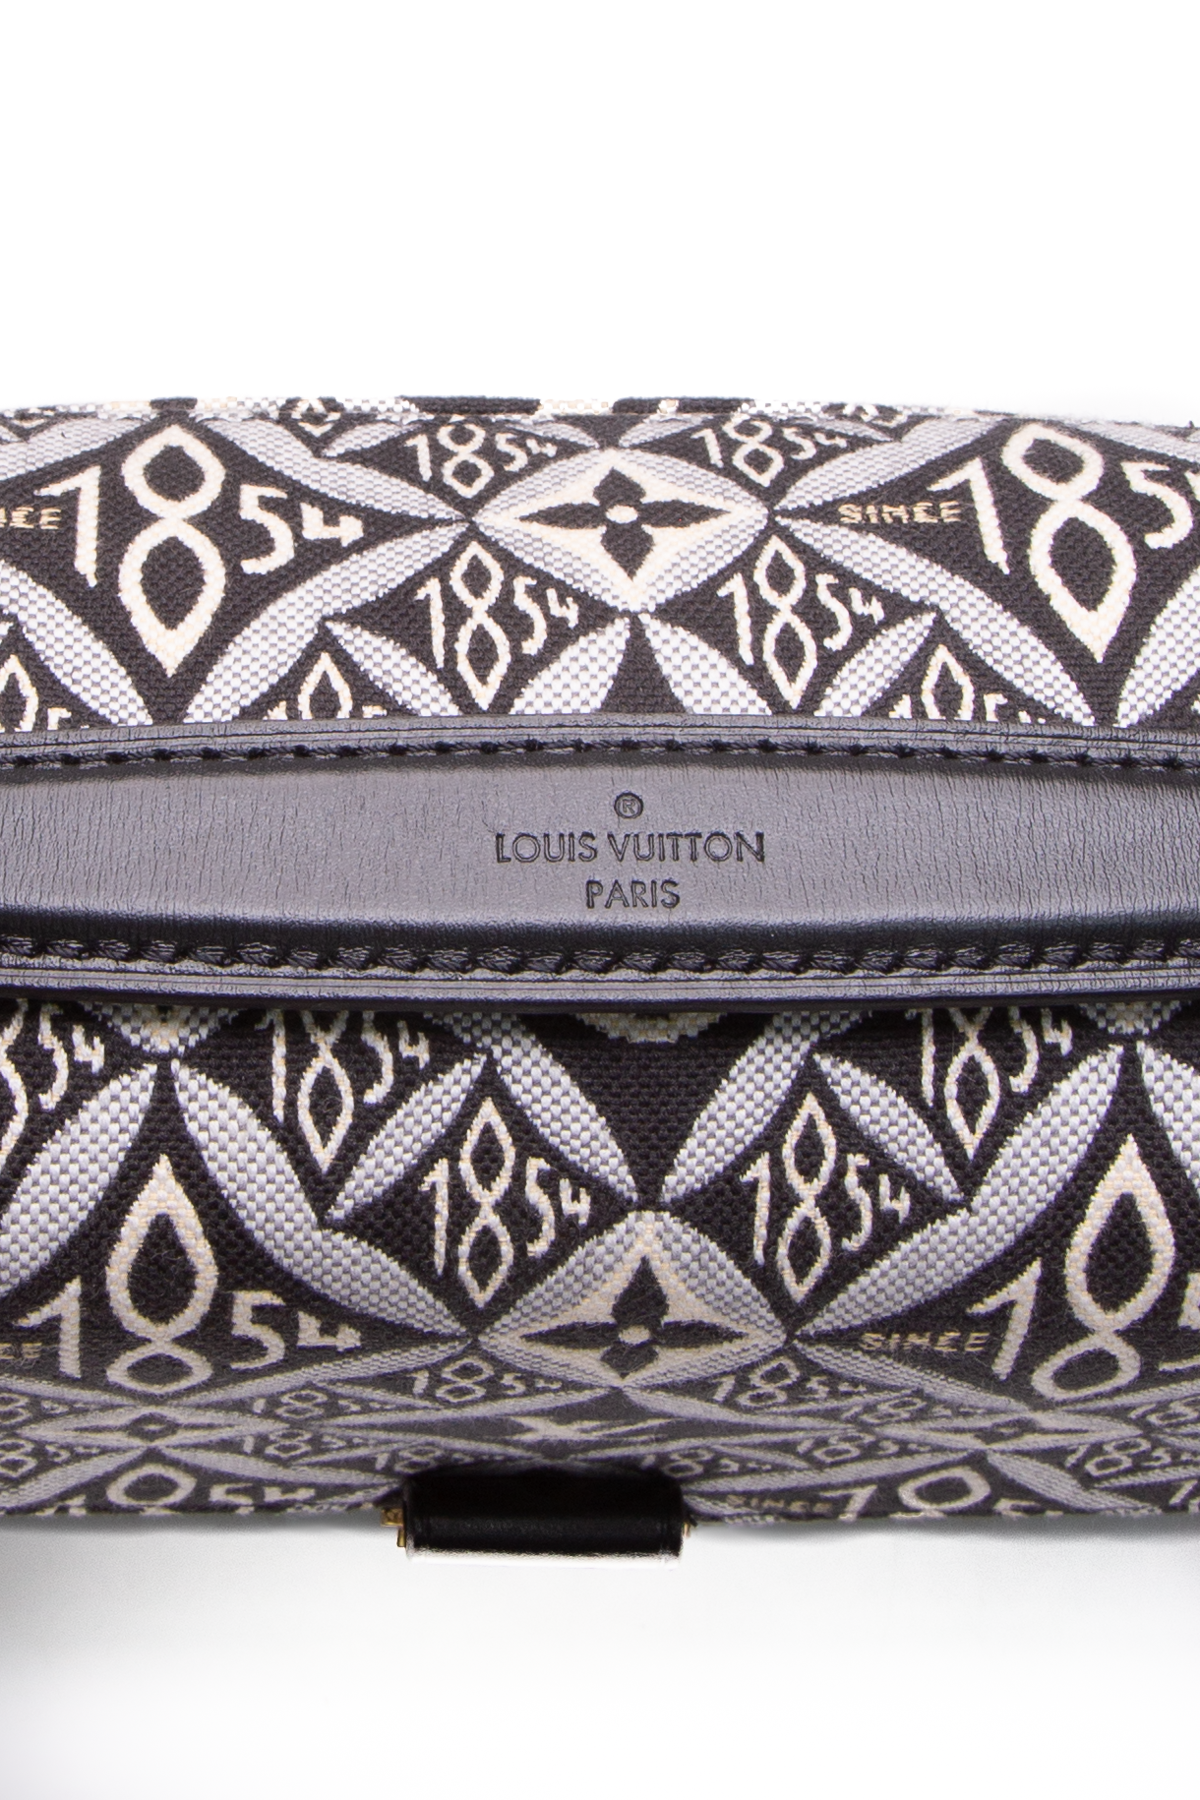 Louis Vuitton Since 1854 Pochette Metis Blue